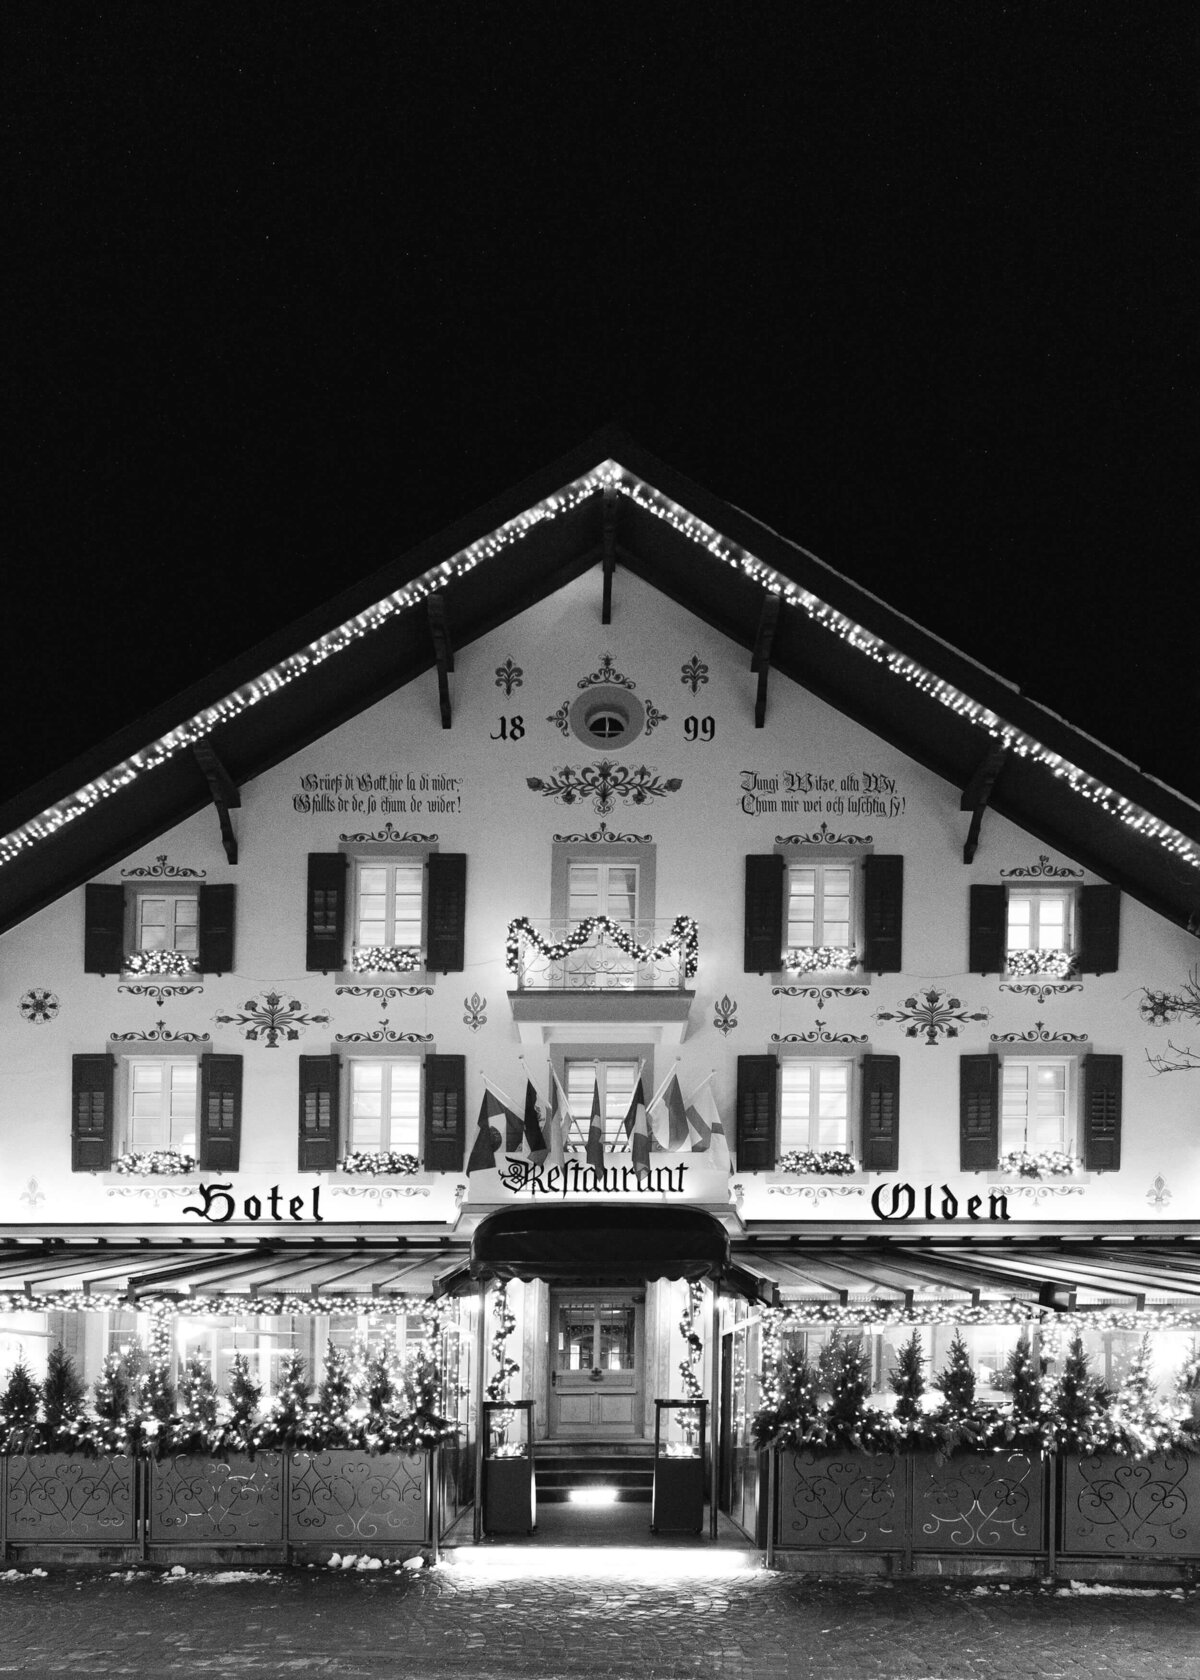 chloe-winstanley-events-switzerland-gstaad-hotel-olden-night